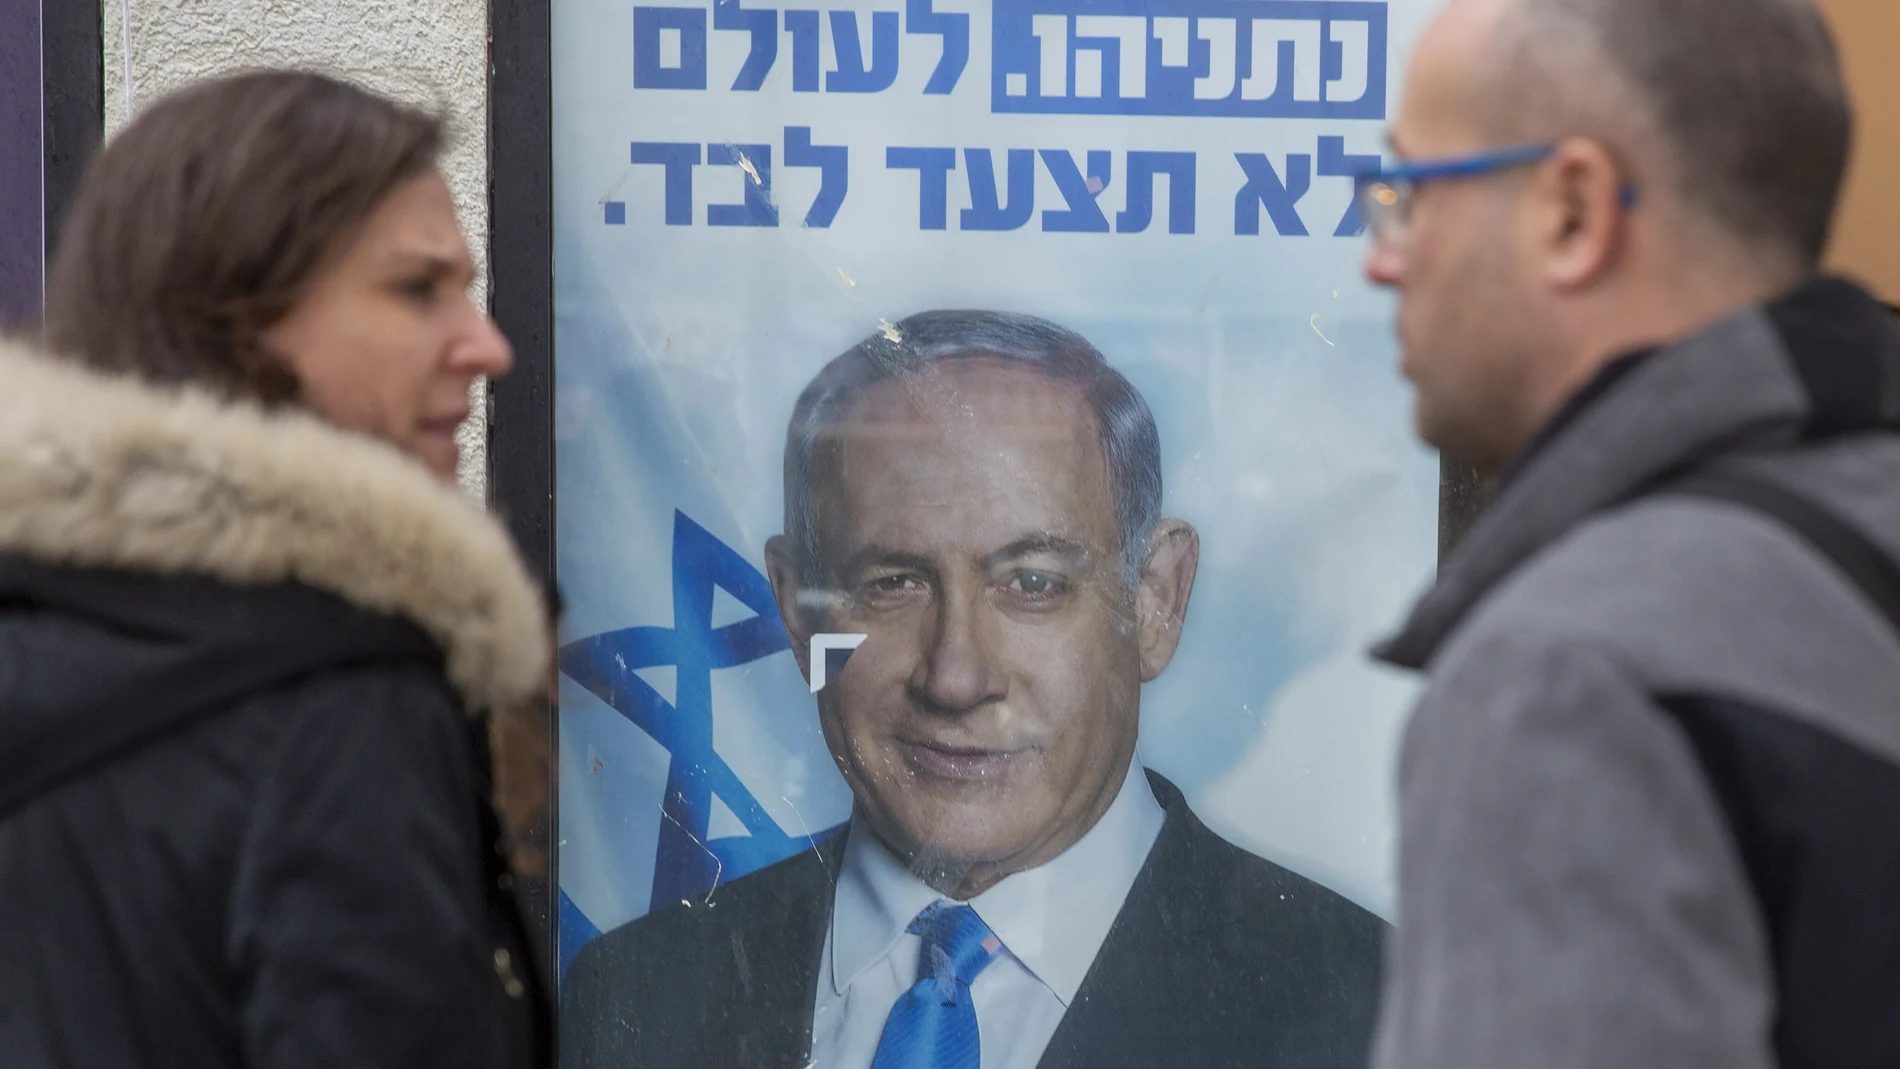 Cartel electoral del primer ministro de Israel y líder del partido Likud, Benjamin Netanyahu, en un colegio electoral de la ciudad de Hadera.